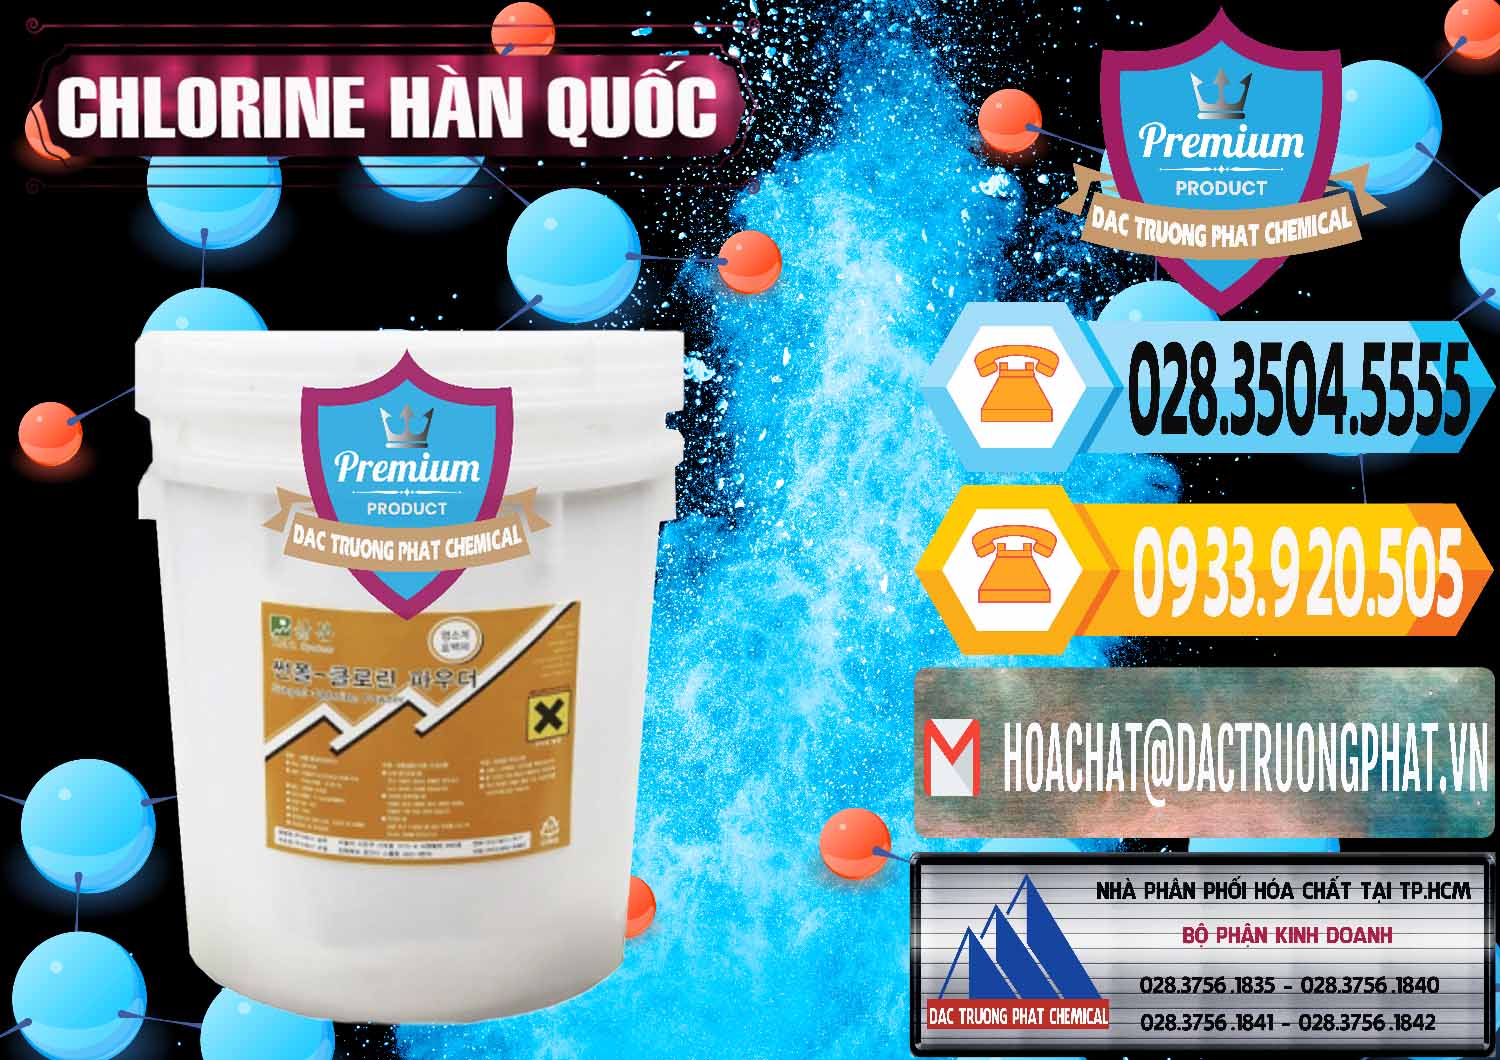 Cty bán và cung cấp Chlorine – Clorin 70% Hàn Quốc Korea - 0345 - Đơn vị chuyên nhập khẩu & phân phối hóa chất tại TP.HCM - hoachattayrua.net